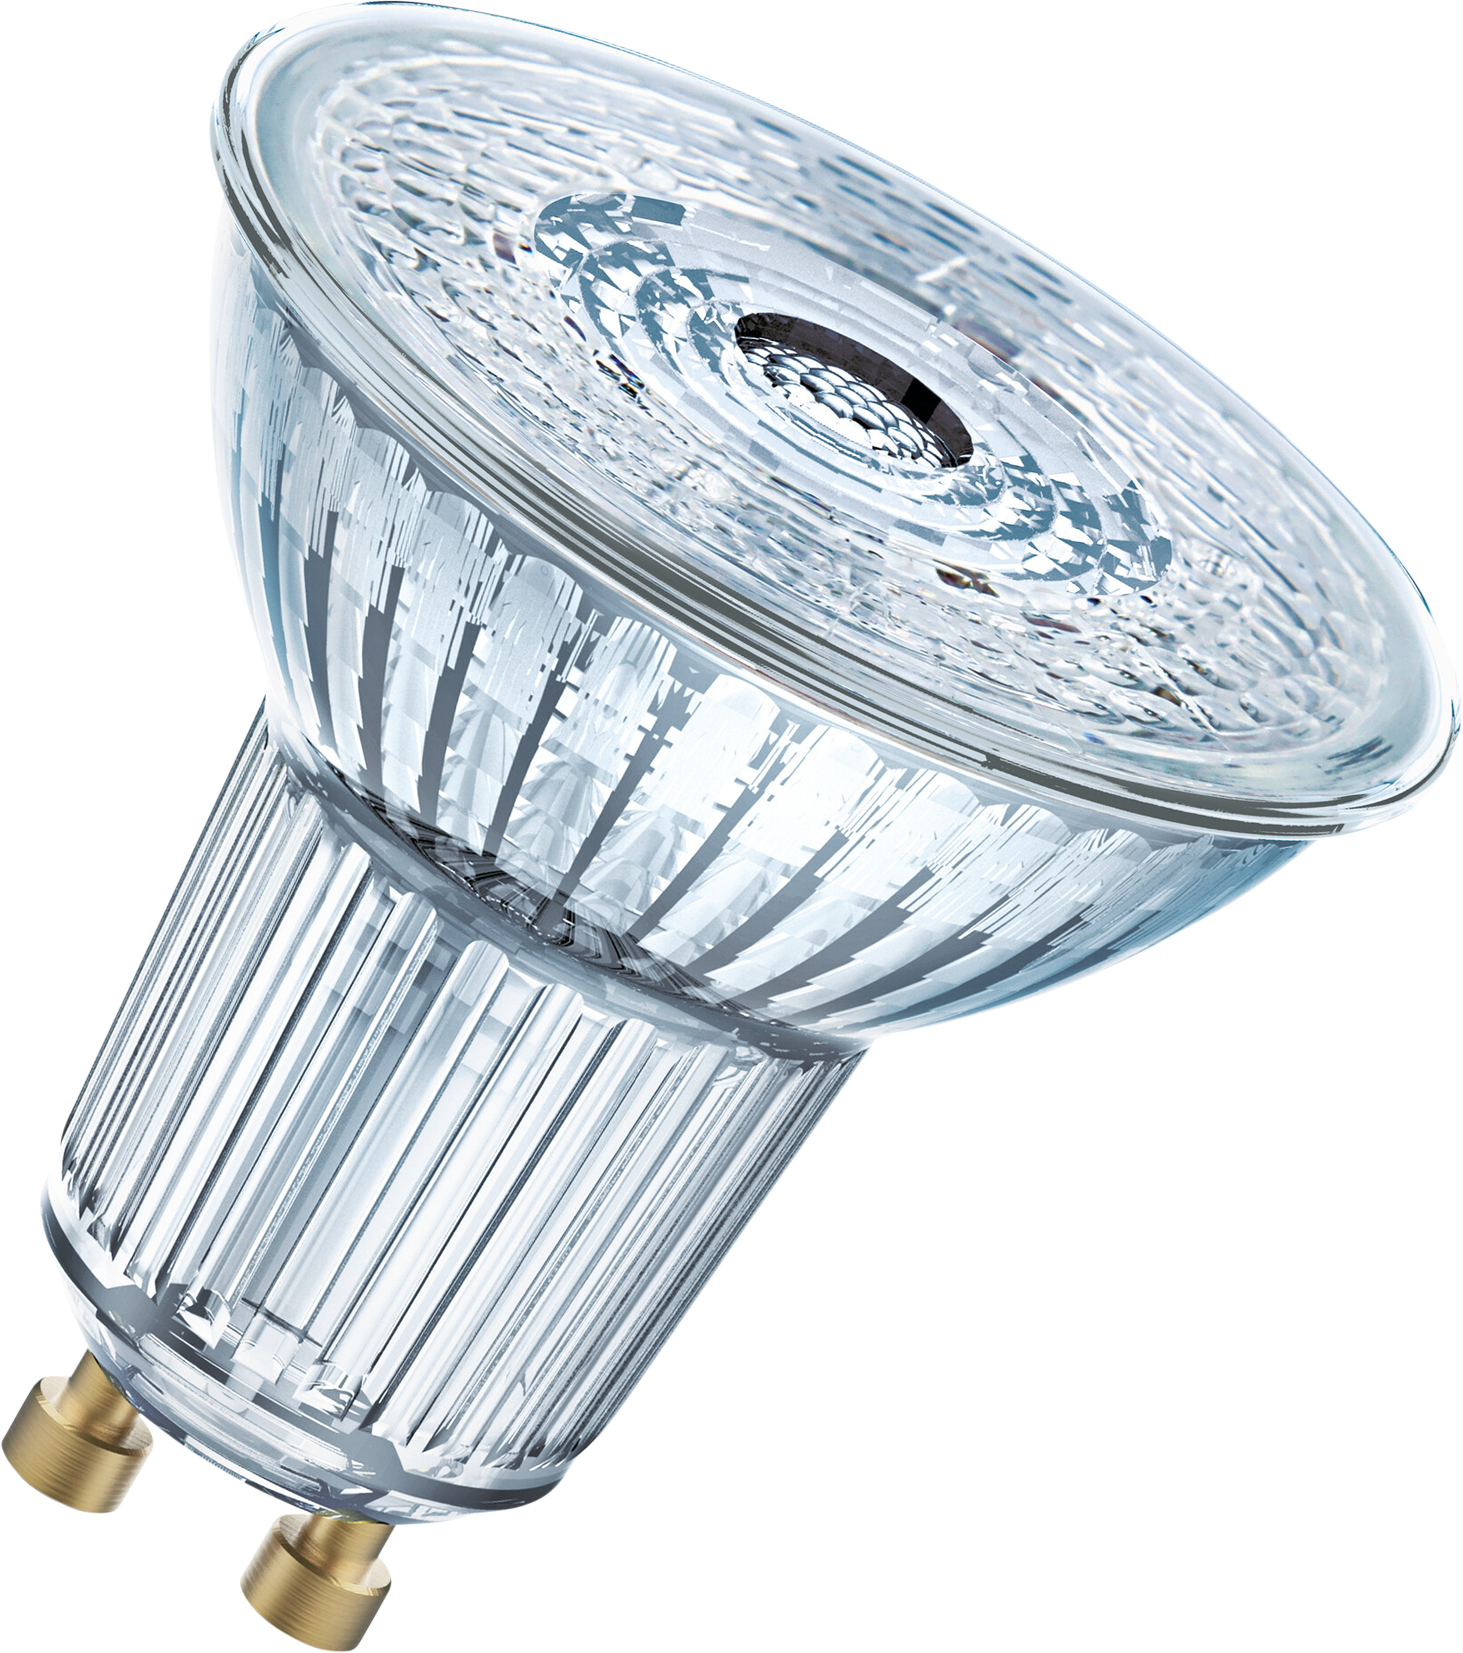 OSRAM LED-Lampe PAR16 GU10, 3.7W, 230lm, dimmbar, warmweiss - Lampen, Leuchten